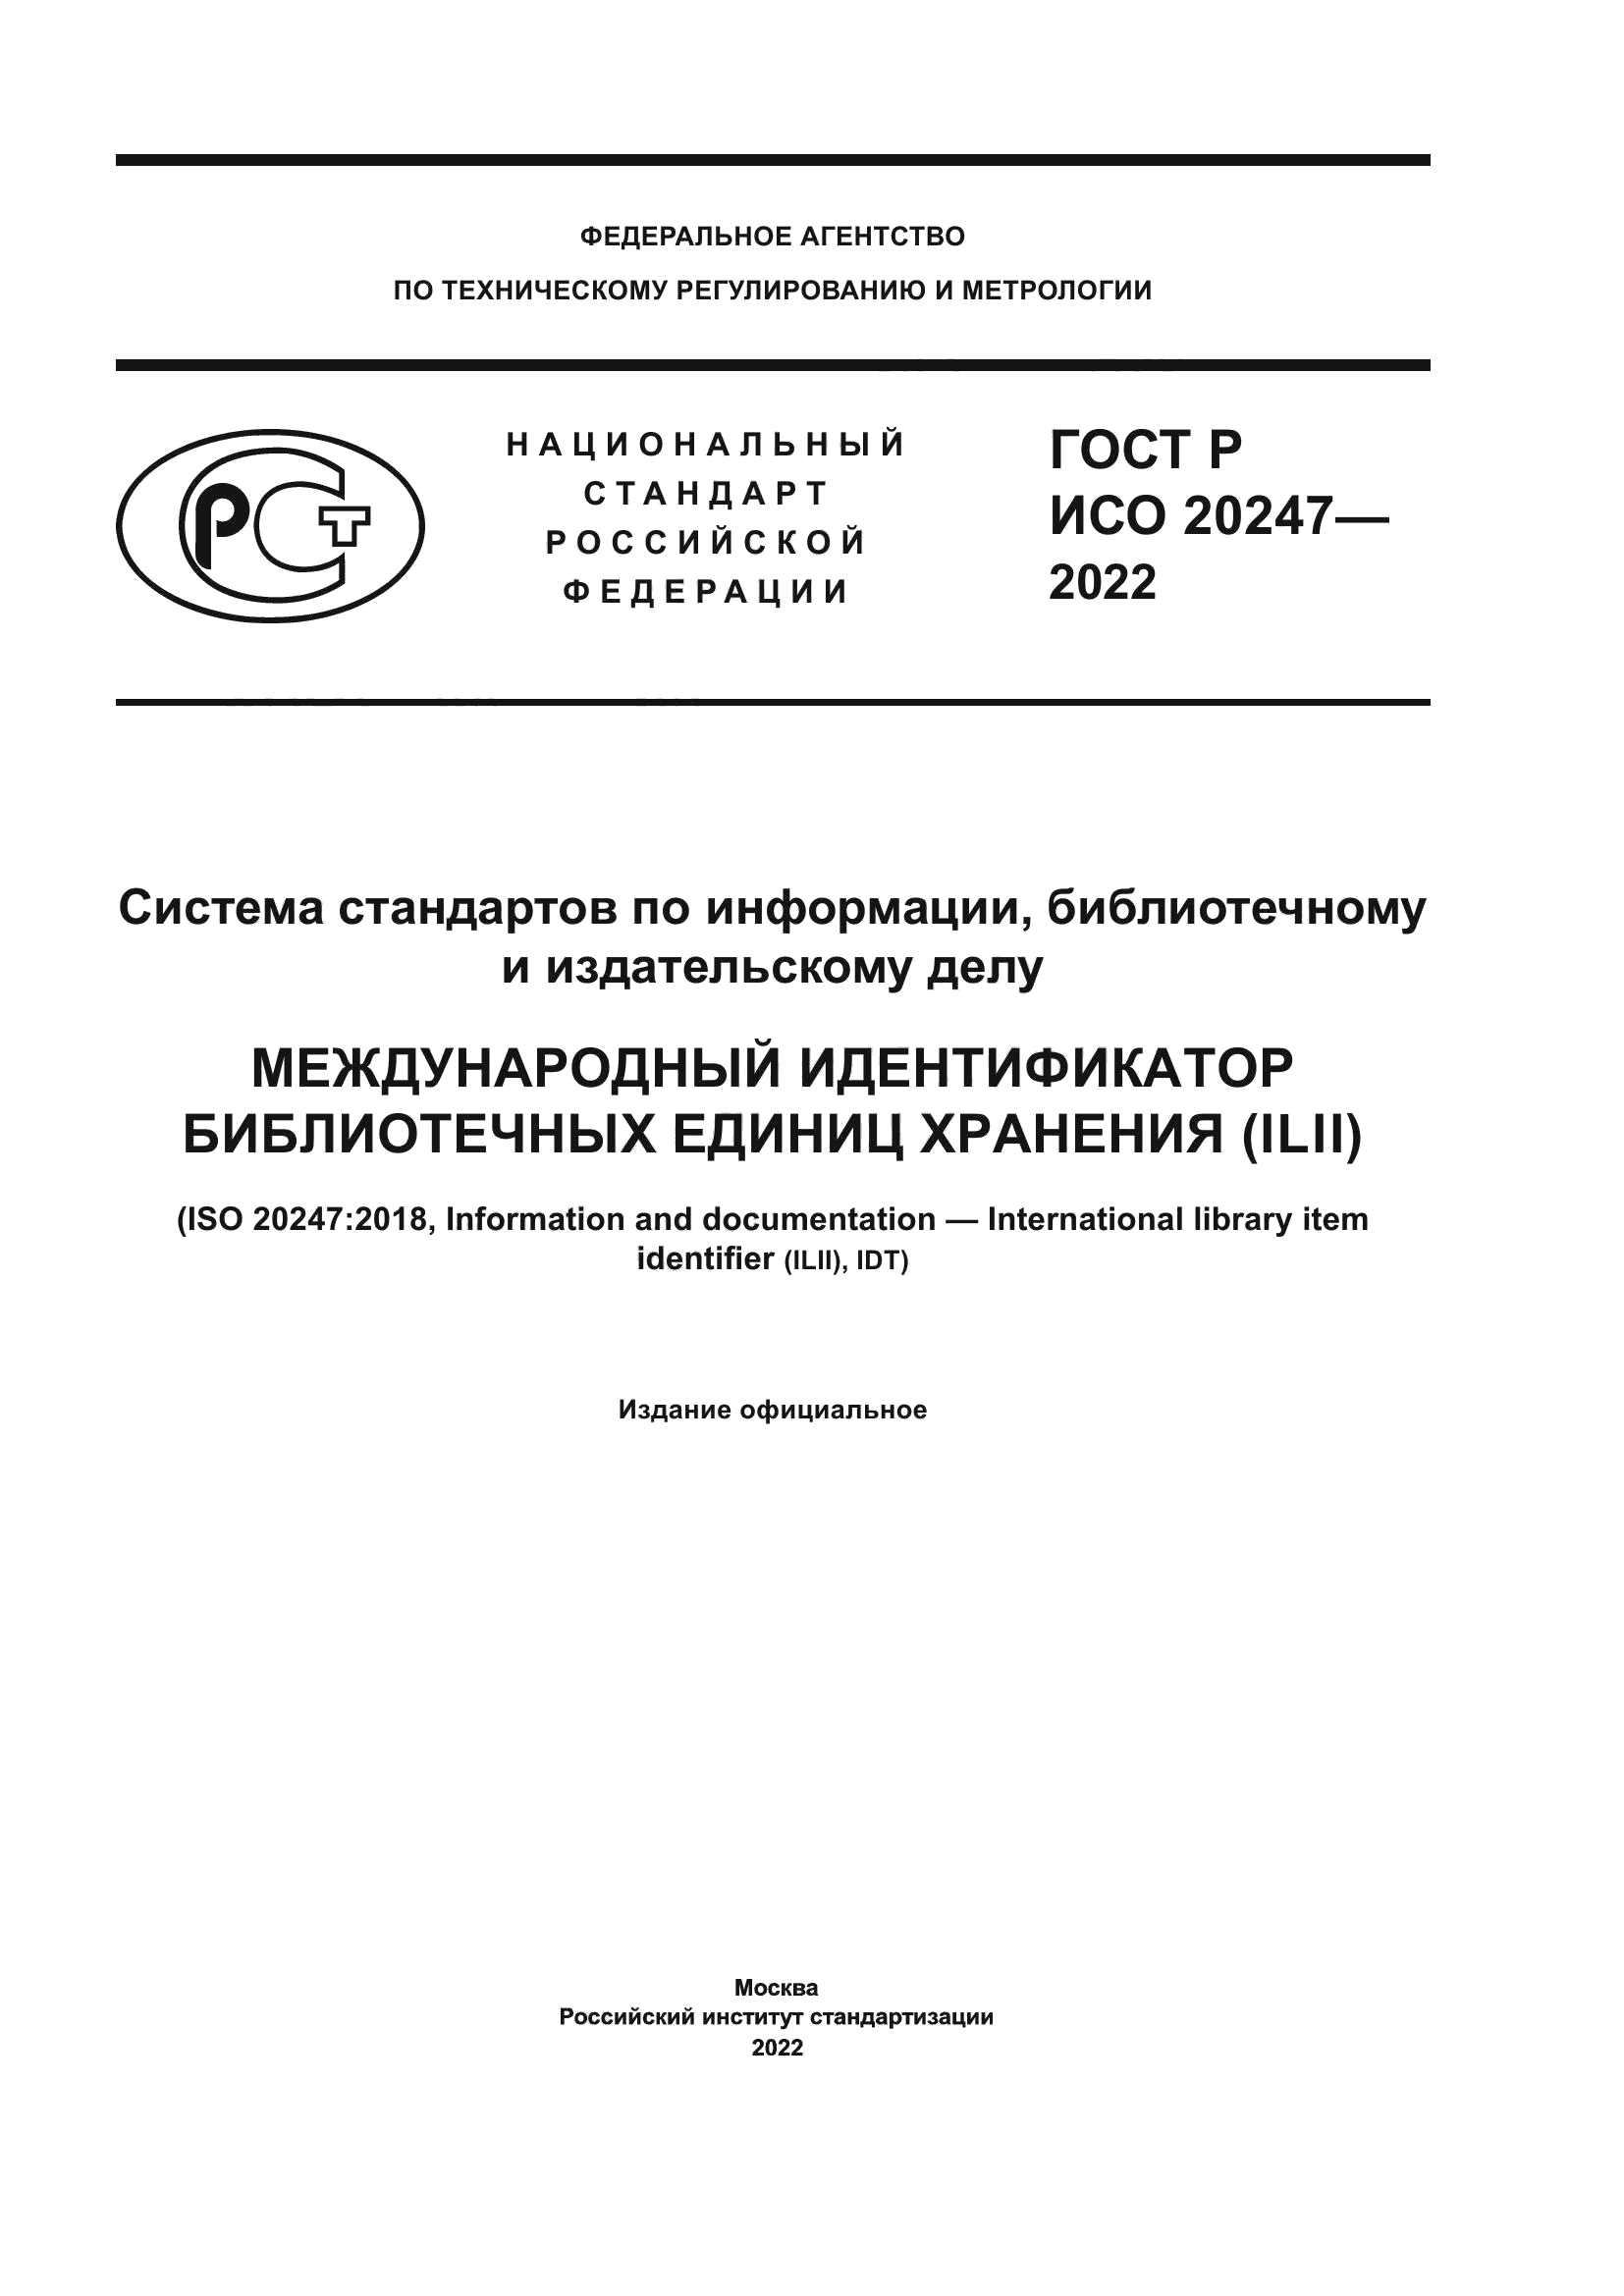 ГОСТ Р ИСО 20247-2022